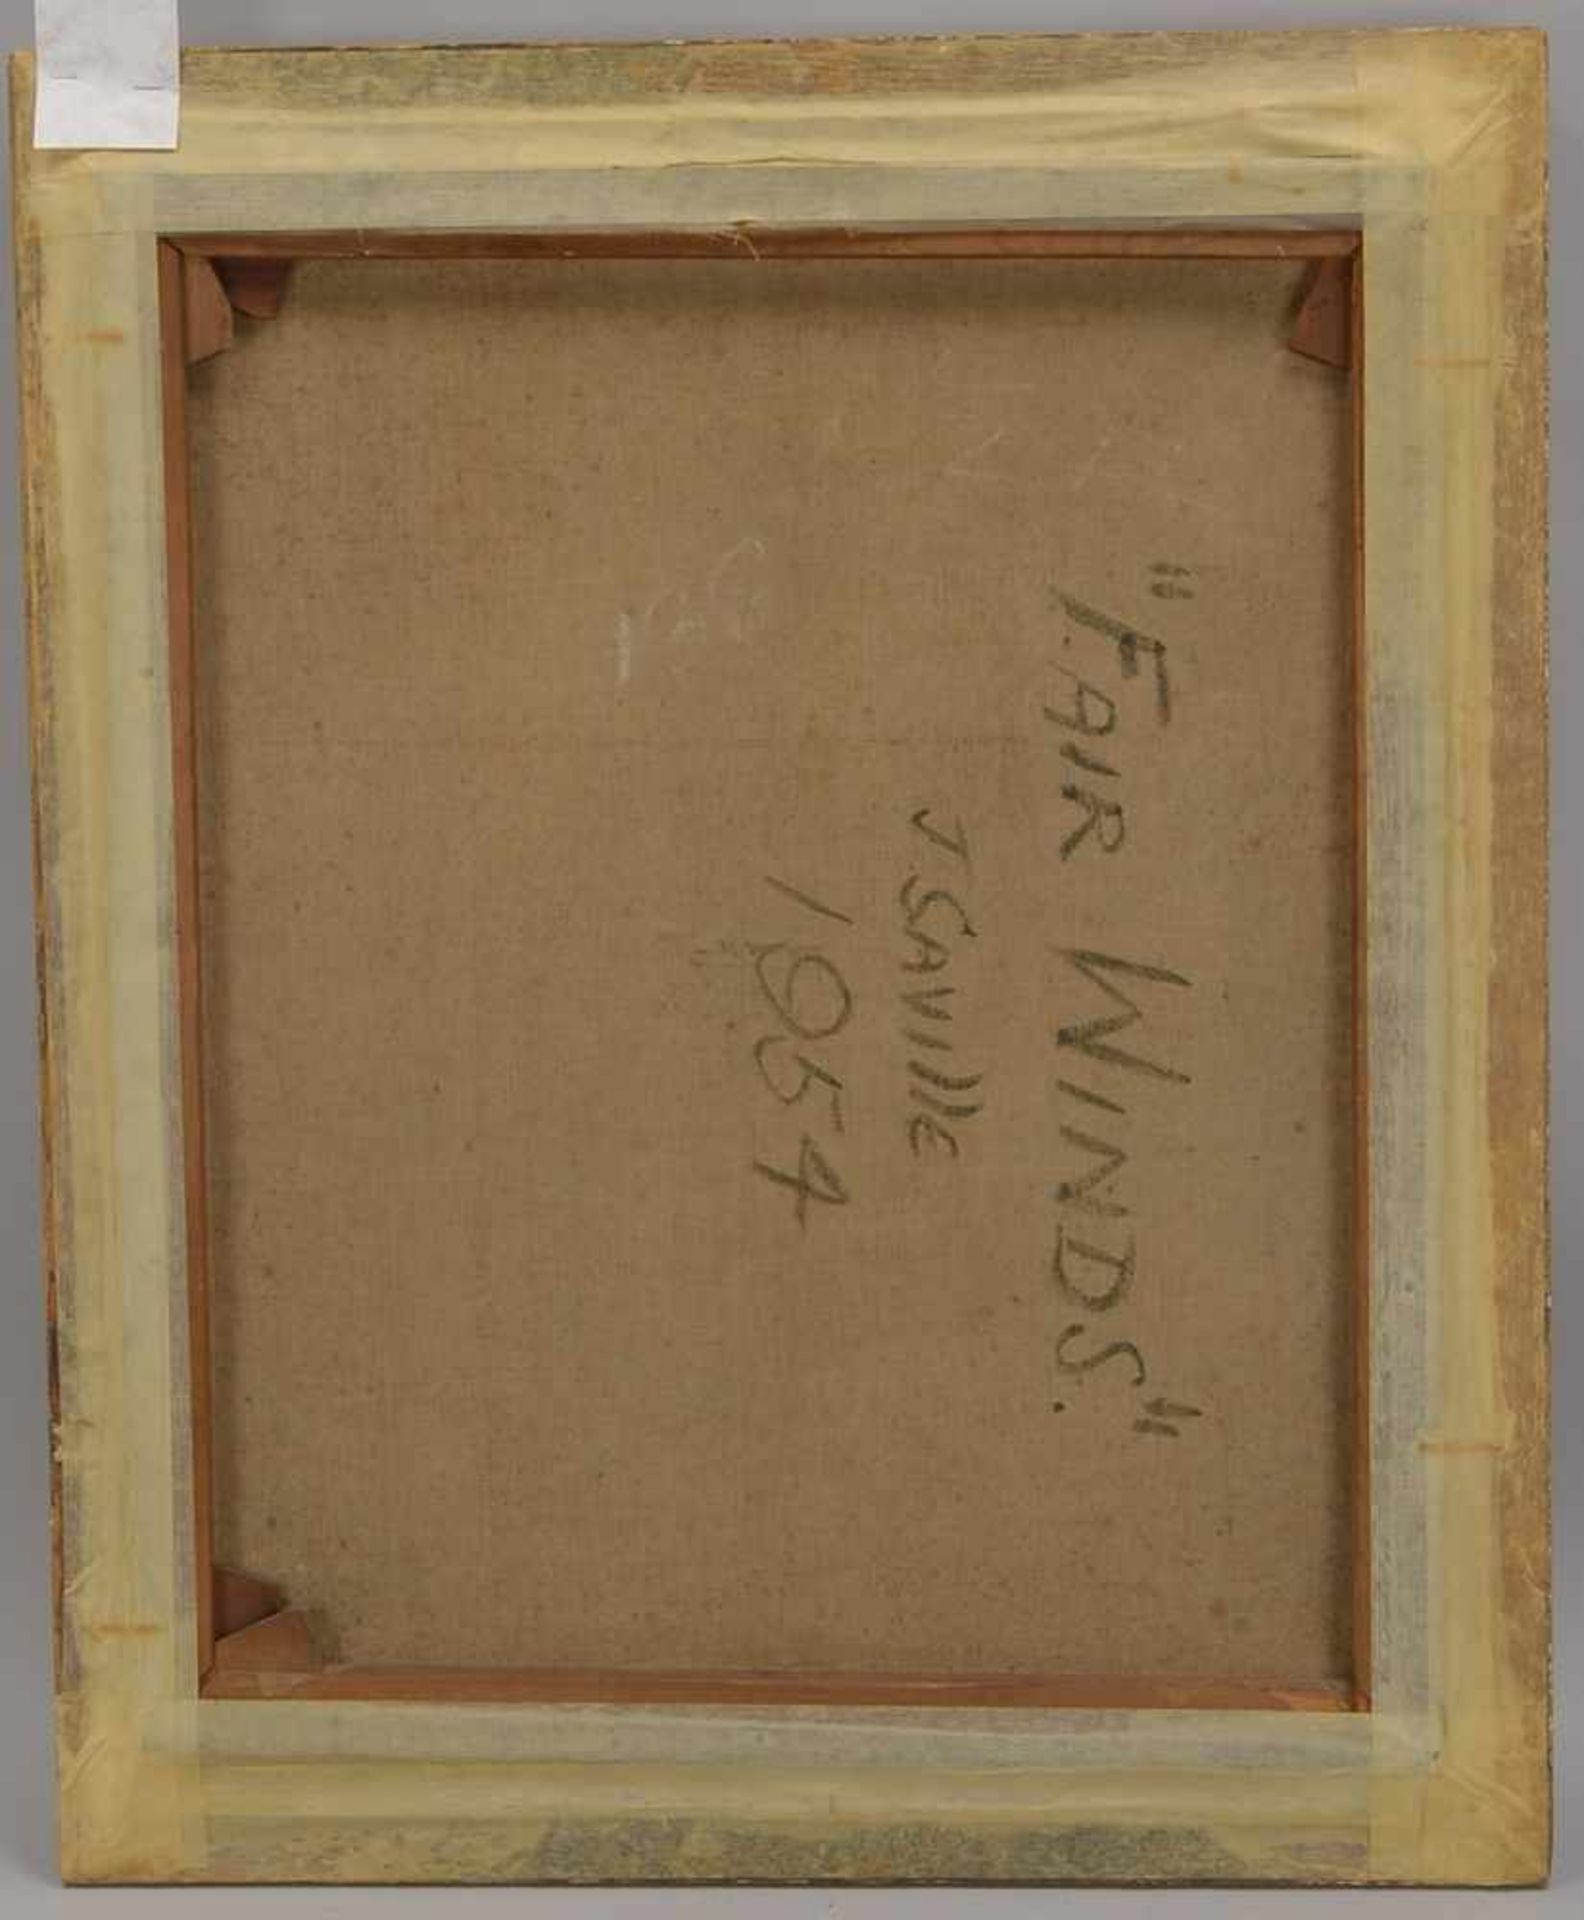 Saville, 'Faire Winde', Öl/Lw, unten rechts signiert, verso bezeichnet sowie datiert '1954'; - Bild 3 aus 3